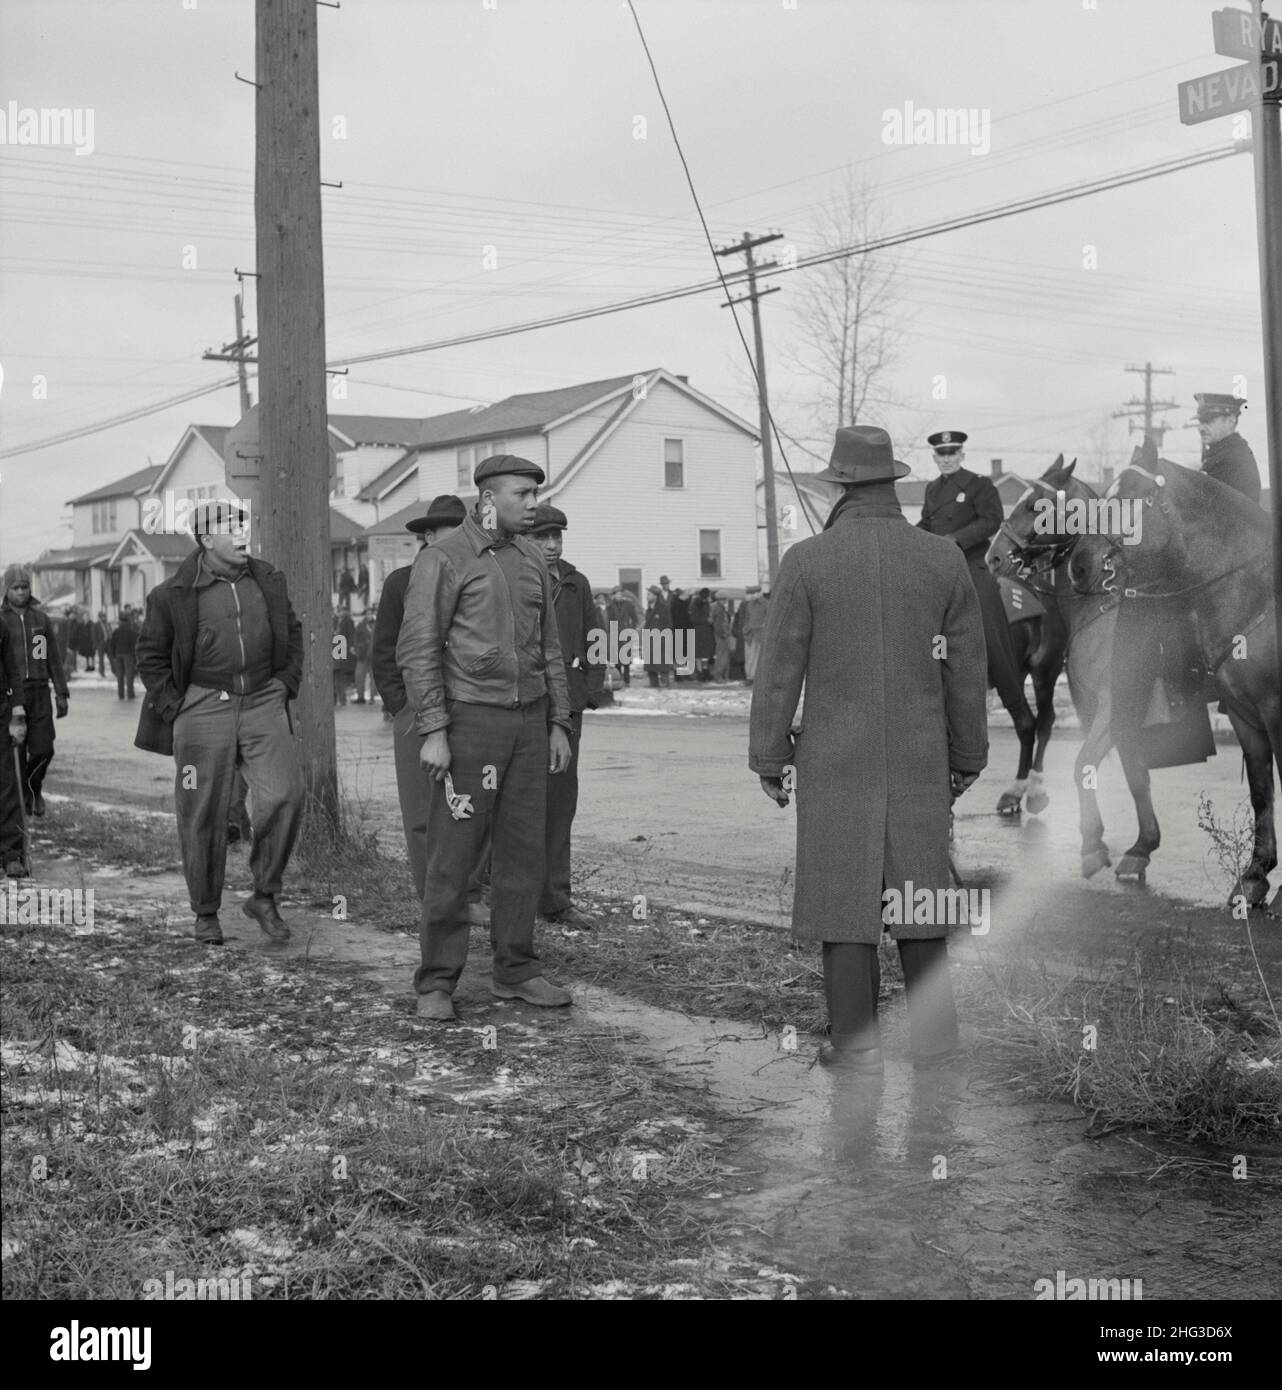 Foto vintage de los disturbios de Detroit. Disturbios en el proyecto de vivienda Sojourner Truth. Detroit, Michigan. Febrero 1942 Foto de stock